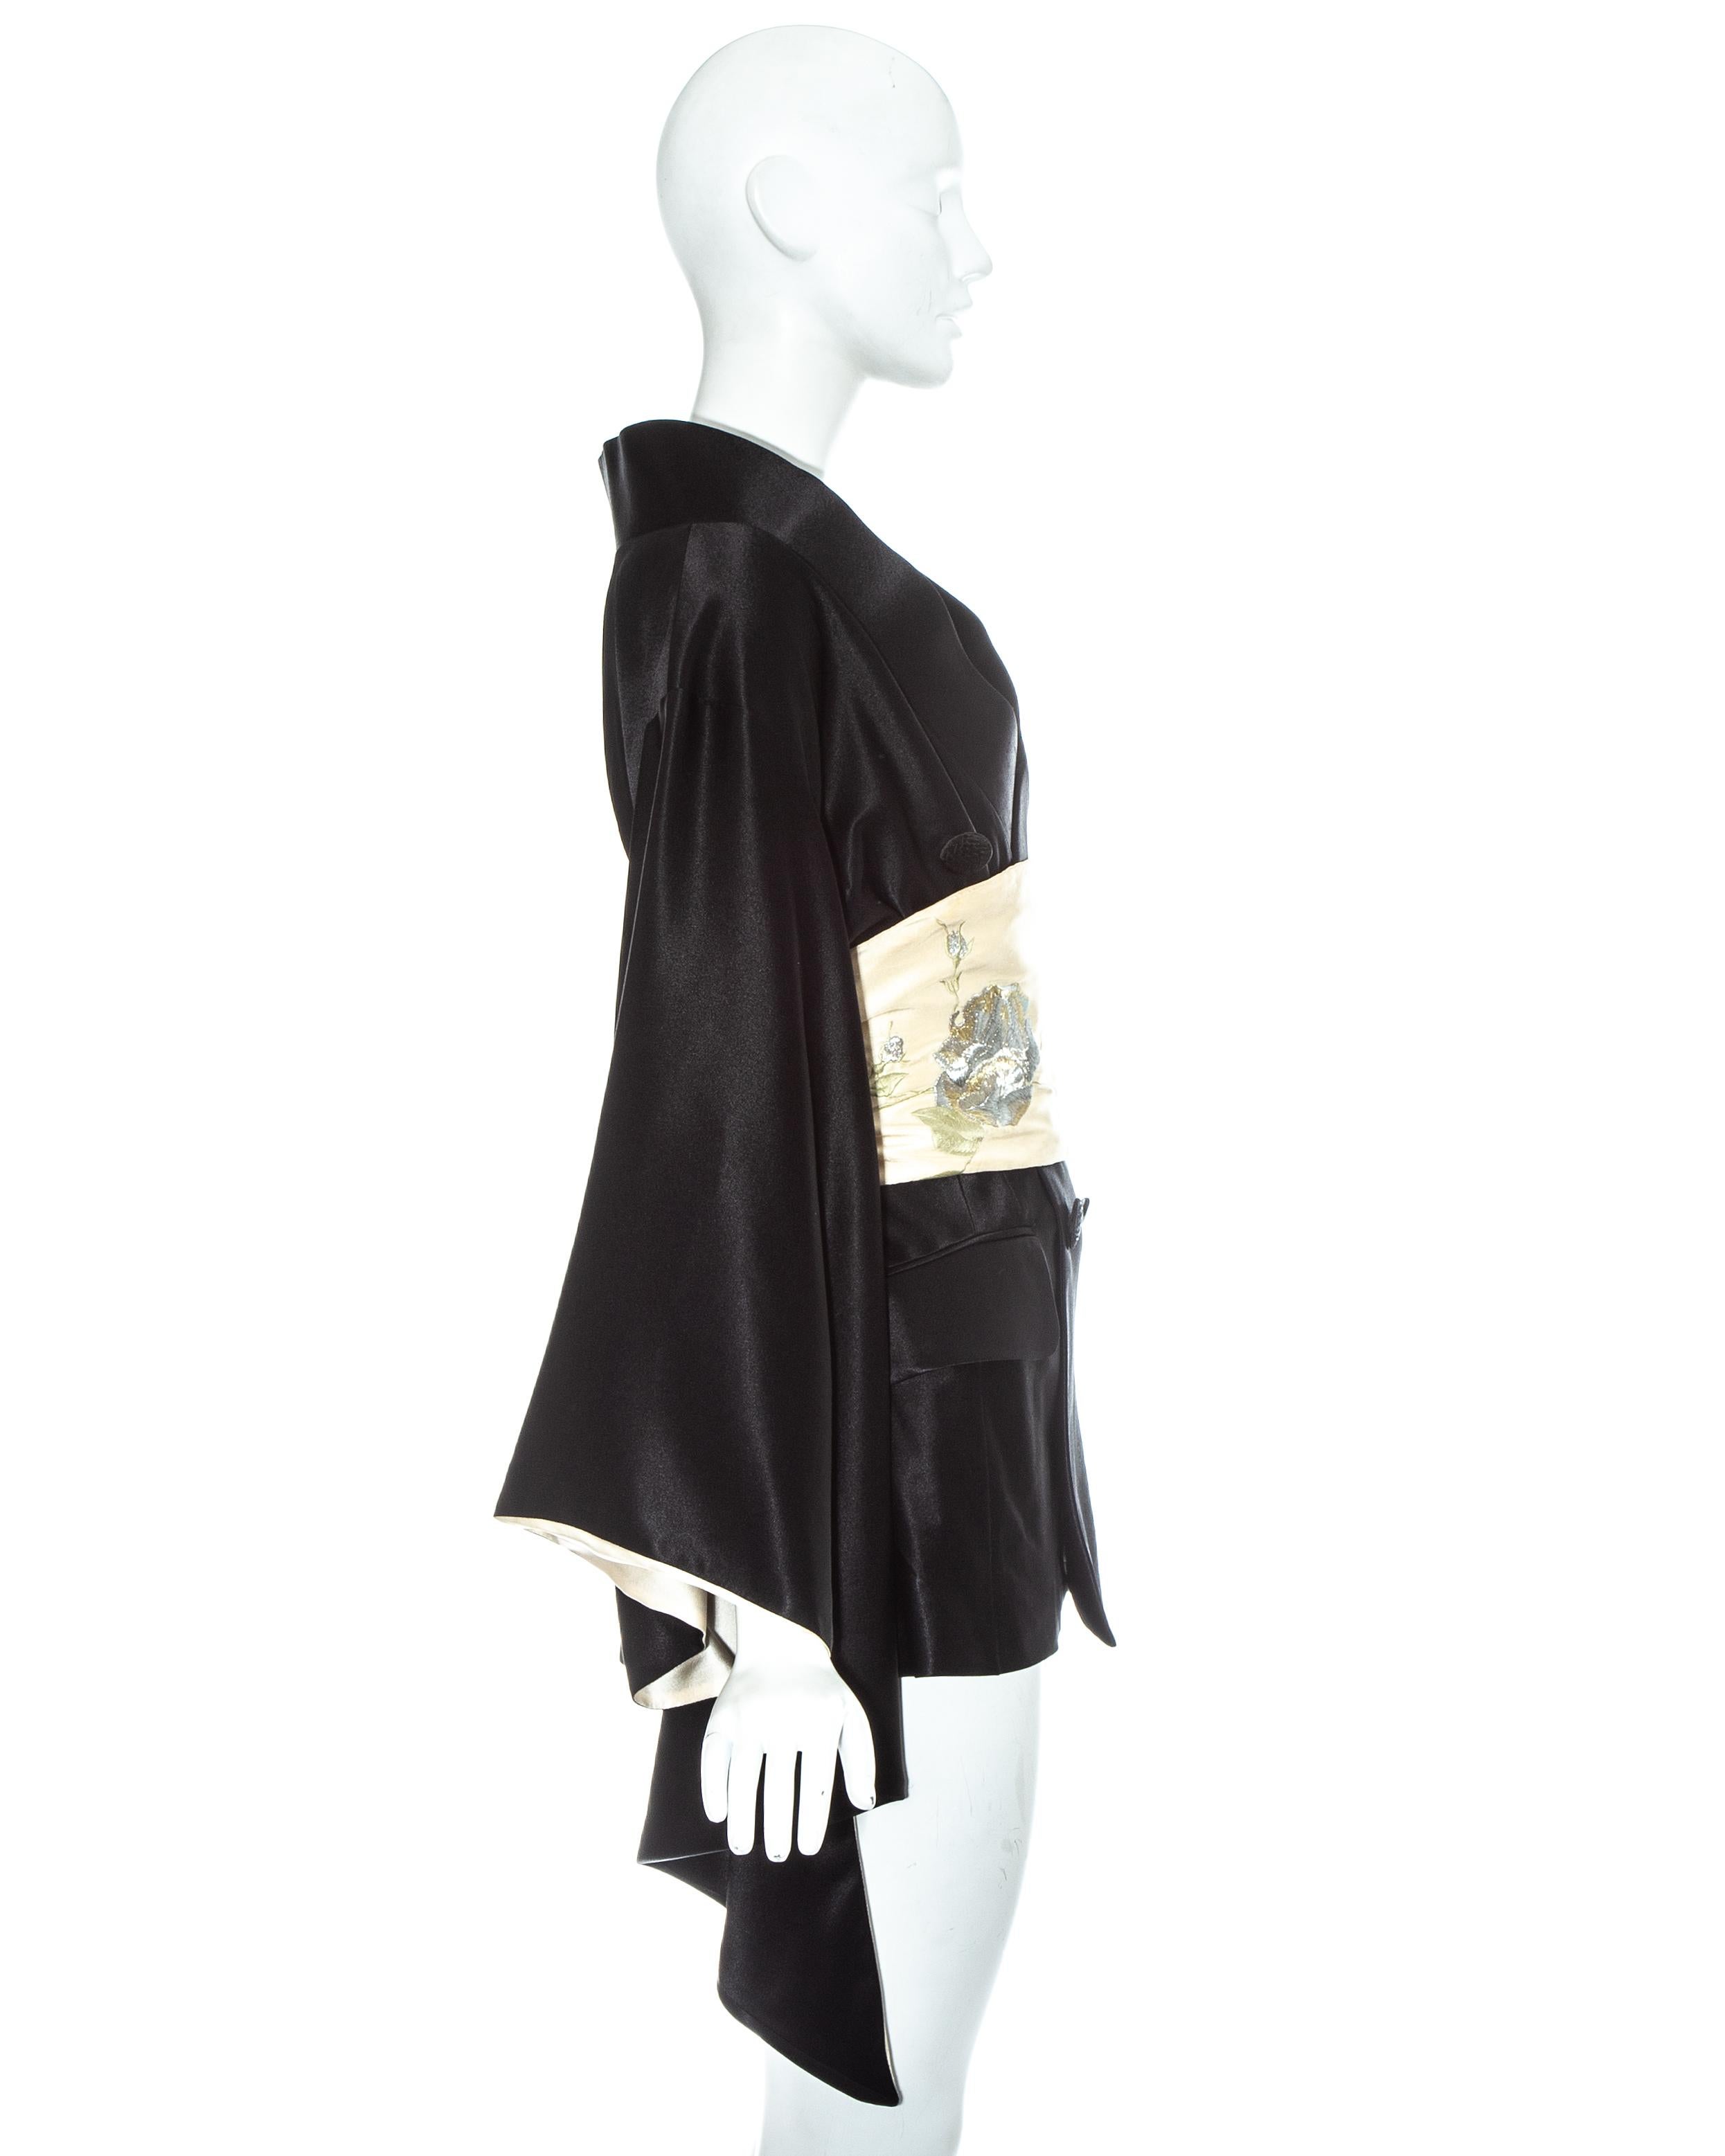 Women's John Galliano Minimono / kimono mini dress with embroidered obi belt, fw 1994